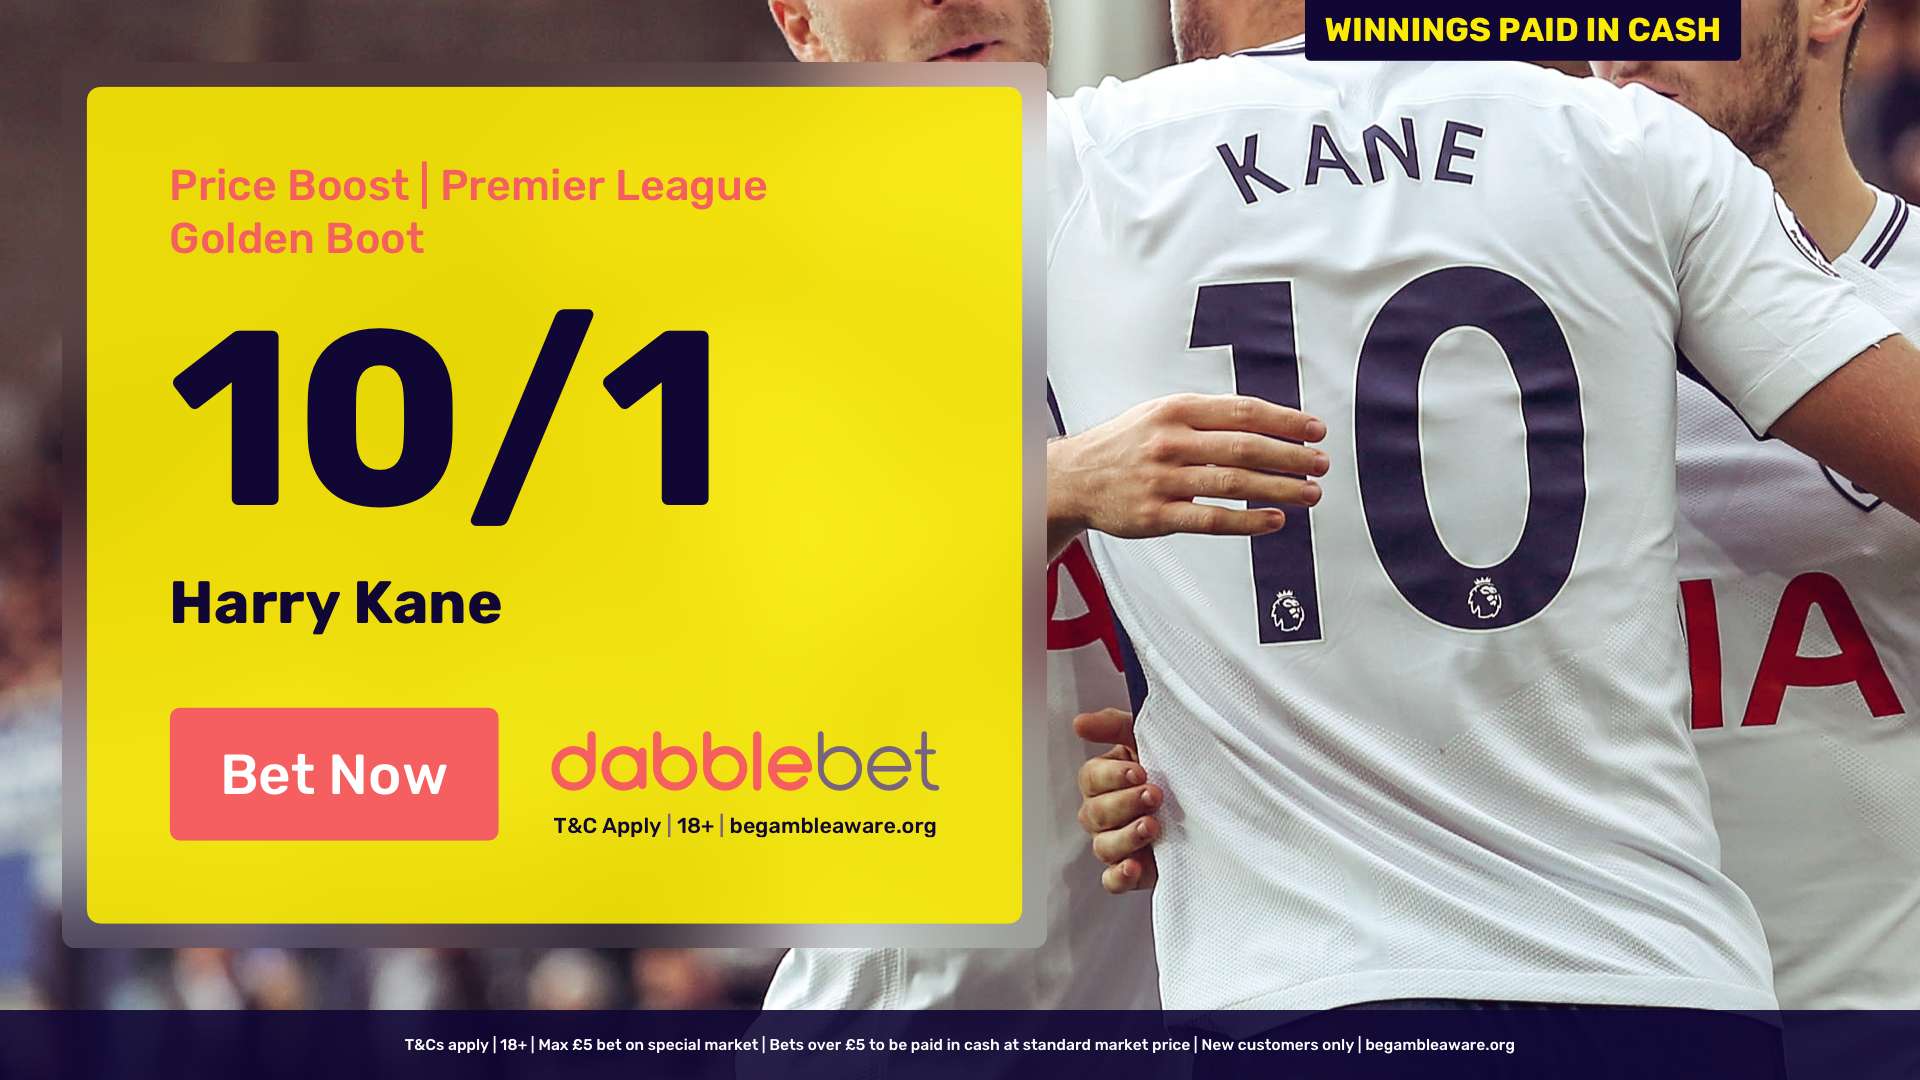 Kane dabblebet Golden Boot new customer offer in article